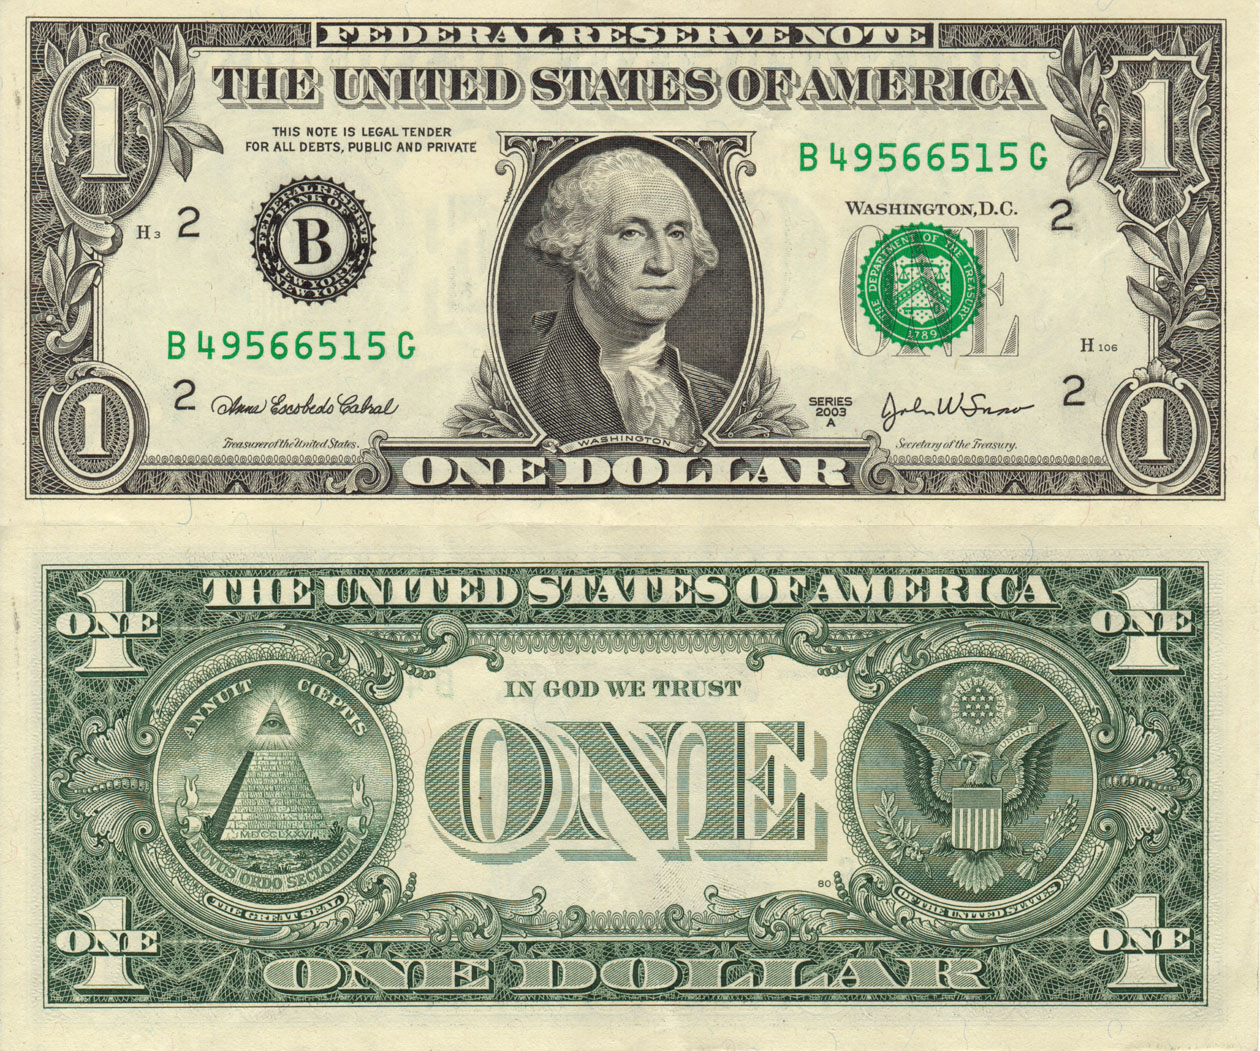 1 Dollar Bill, one dollar bill, dollar bill